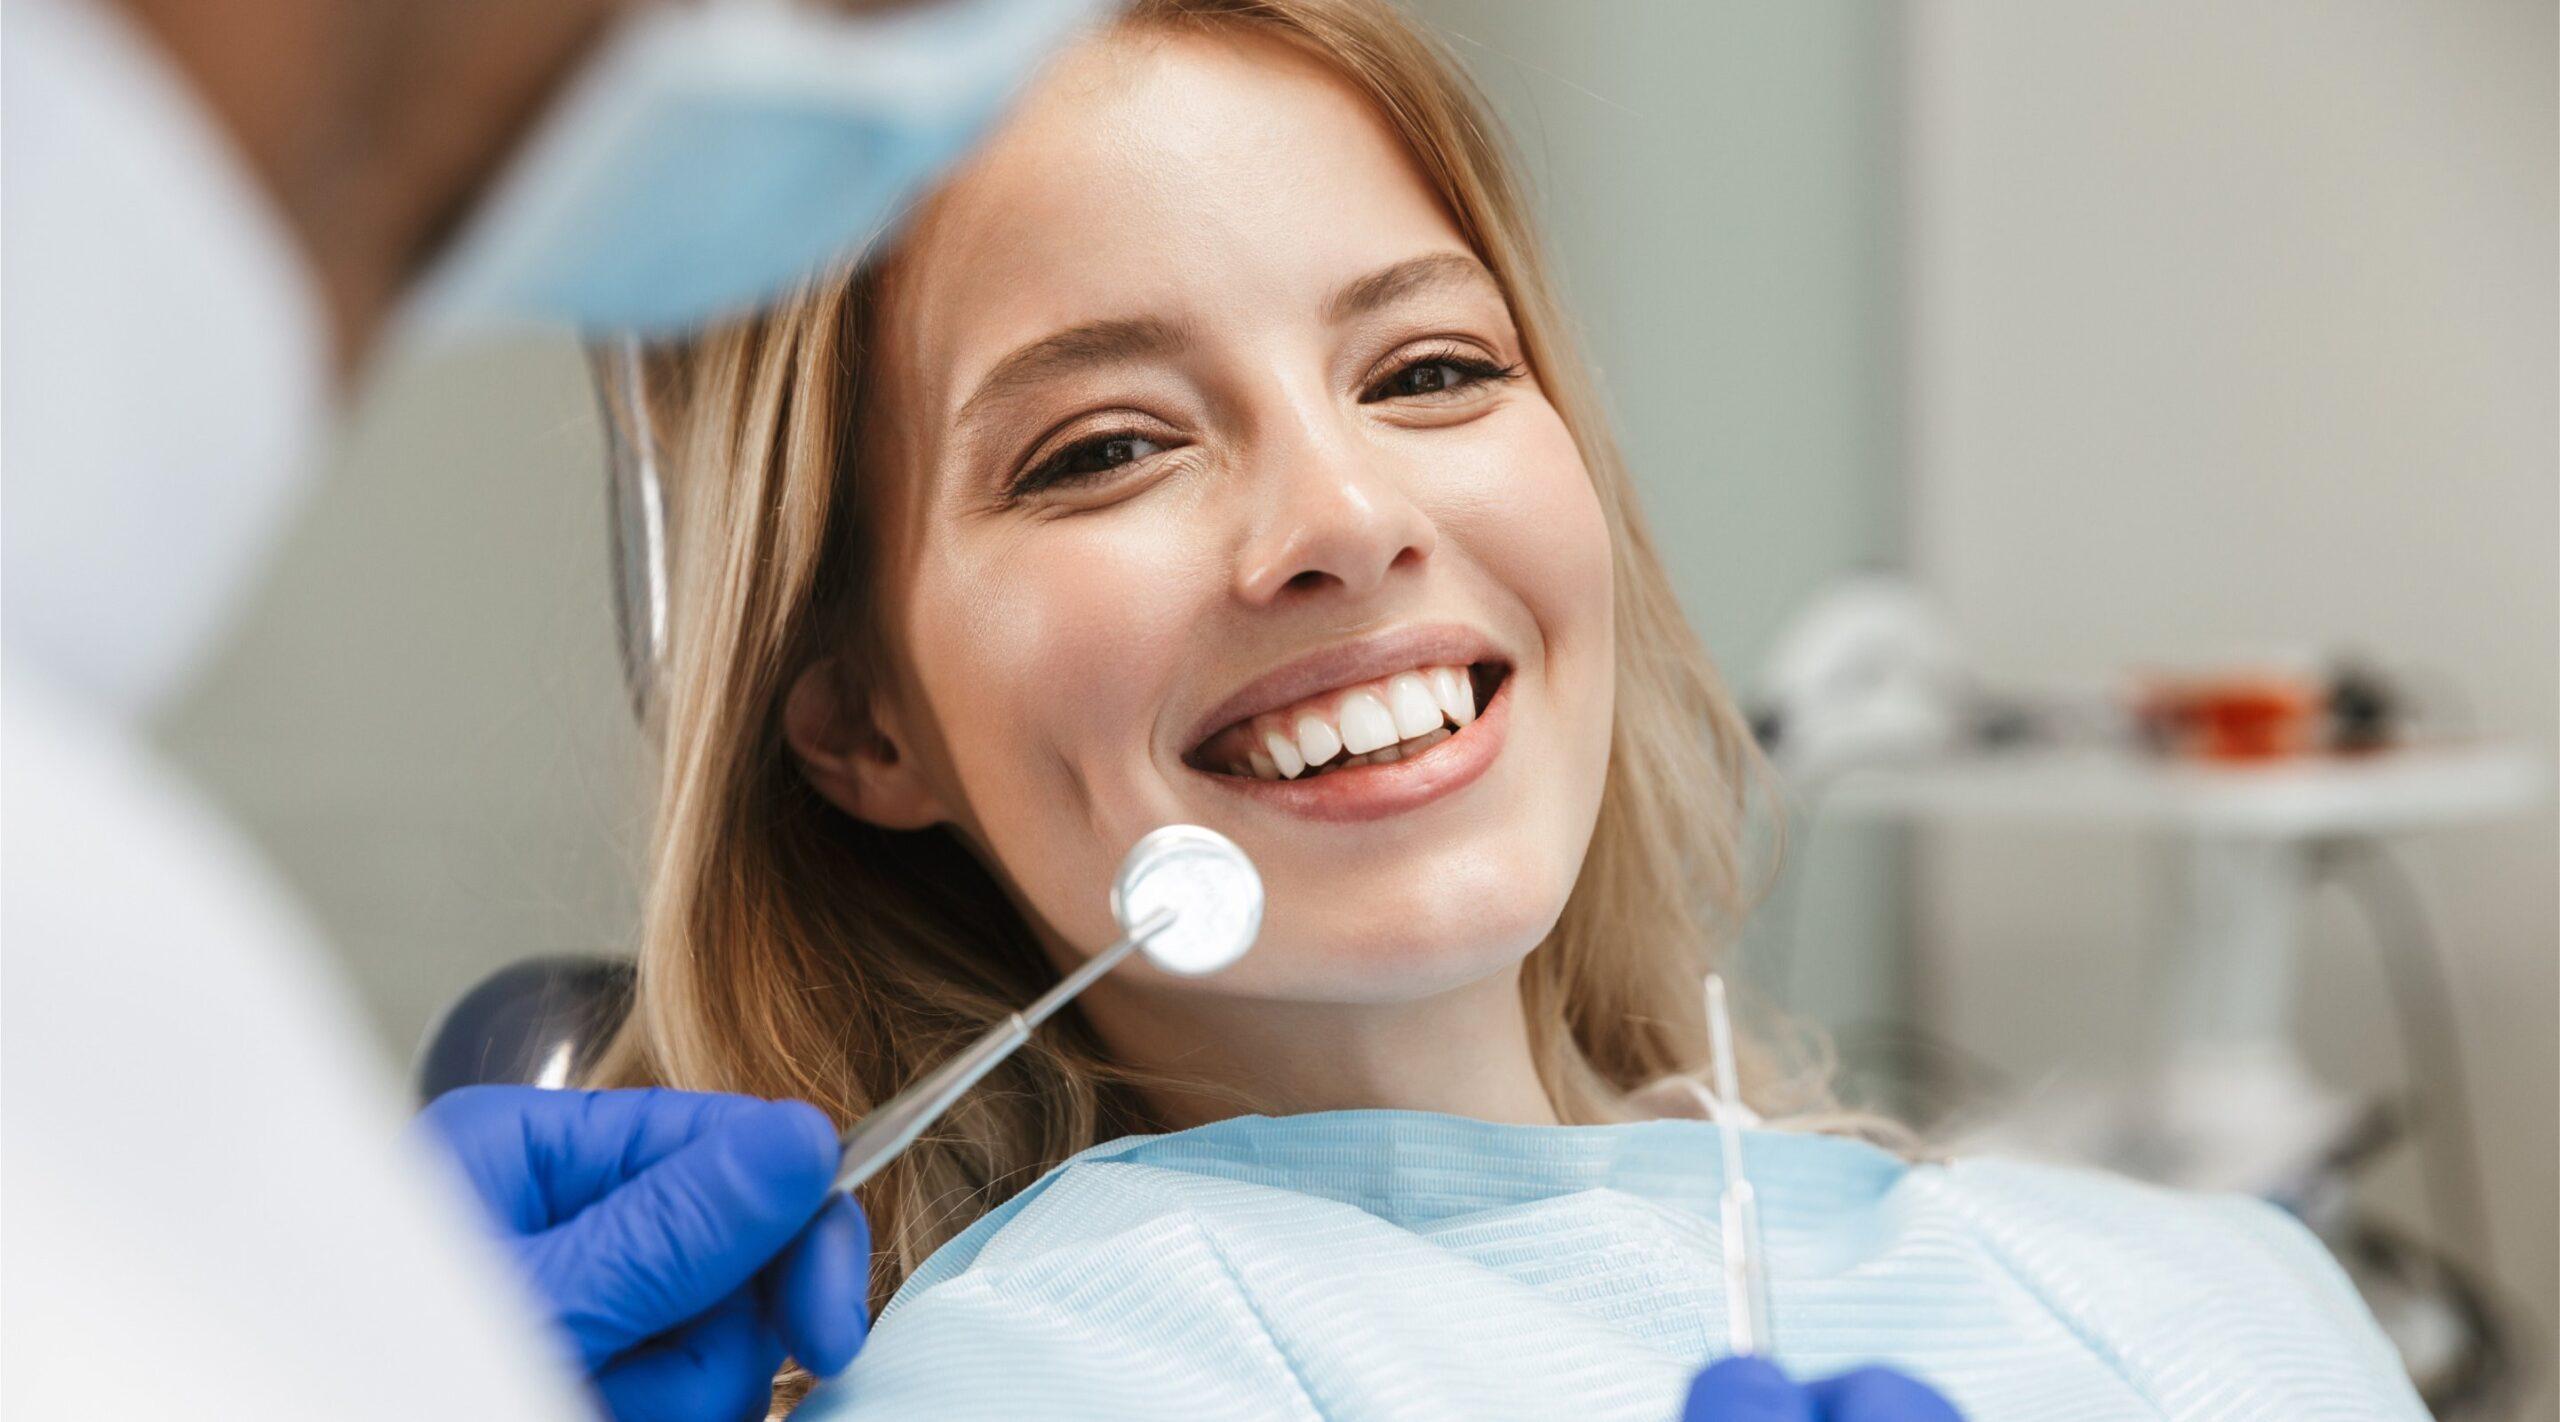 Danties implantai - nauji dantys visam gyvenimui? /